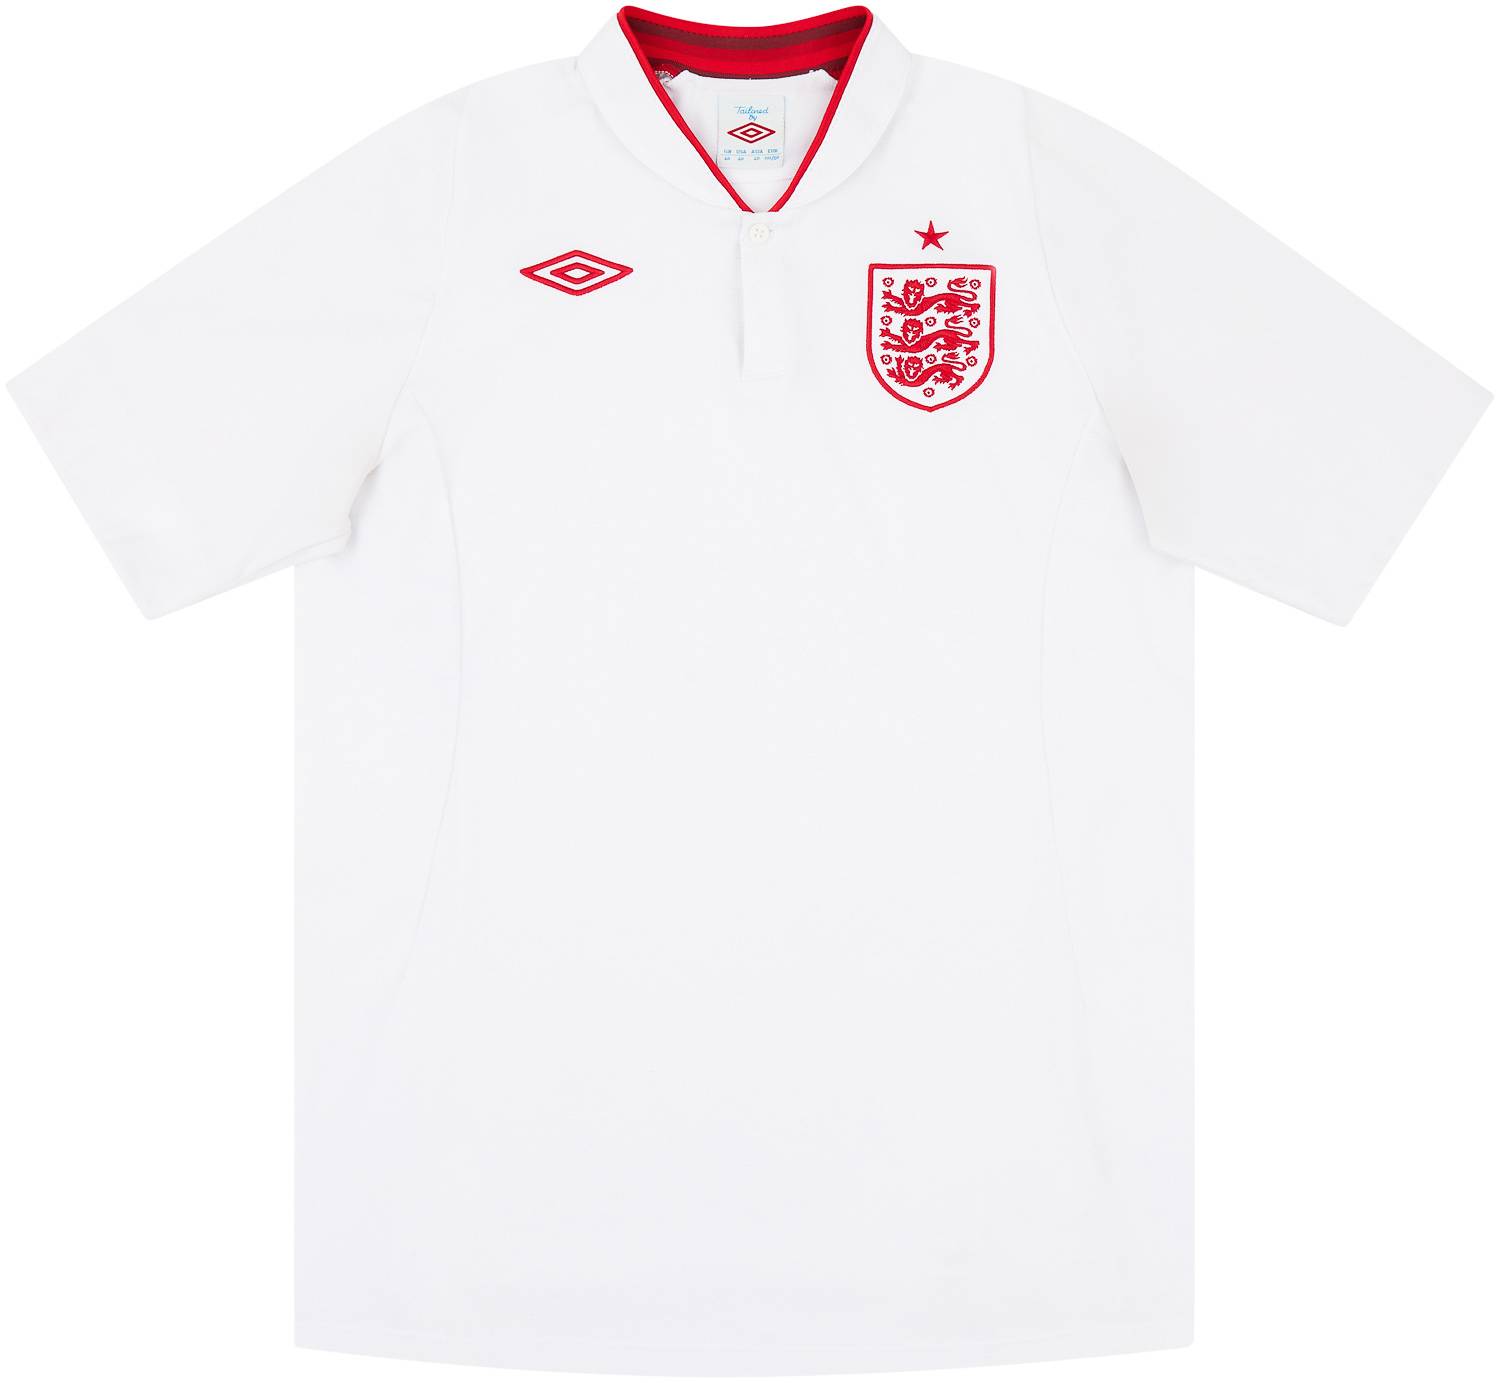 2012-13 England Home Shirt - 7/10